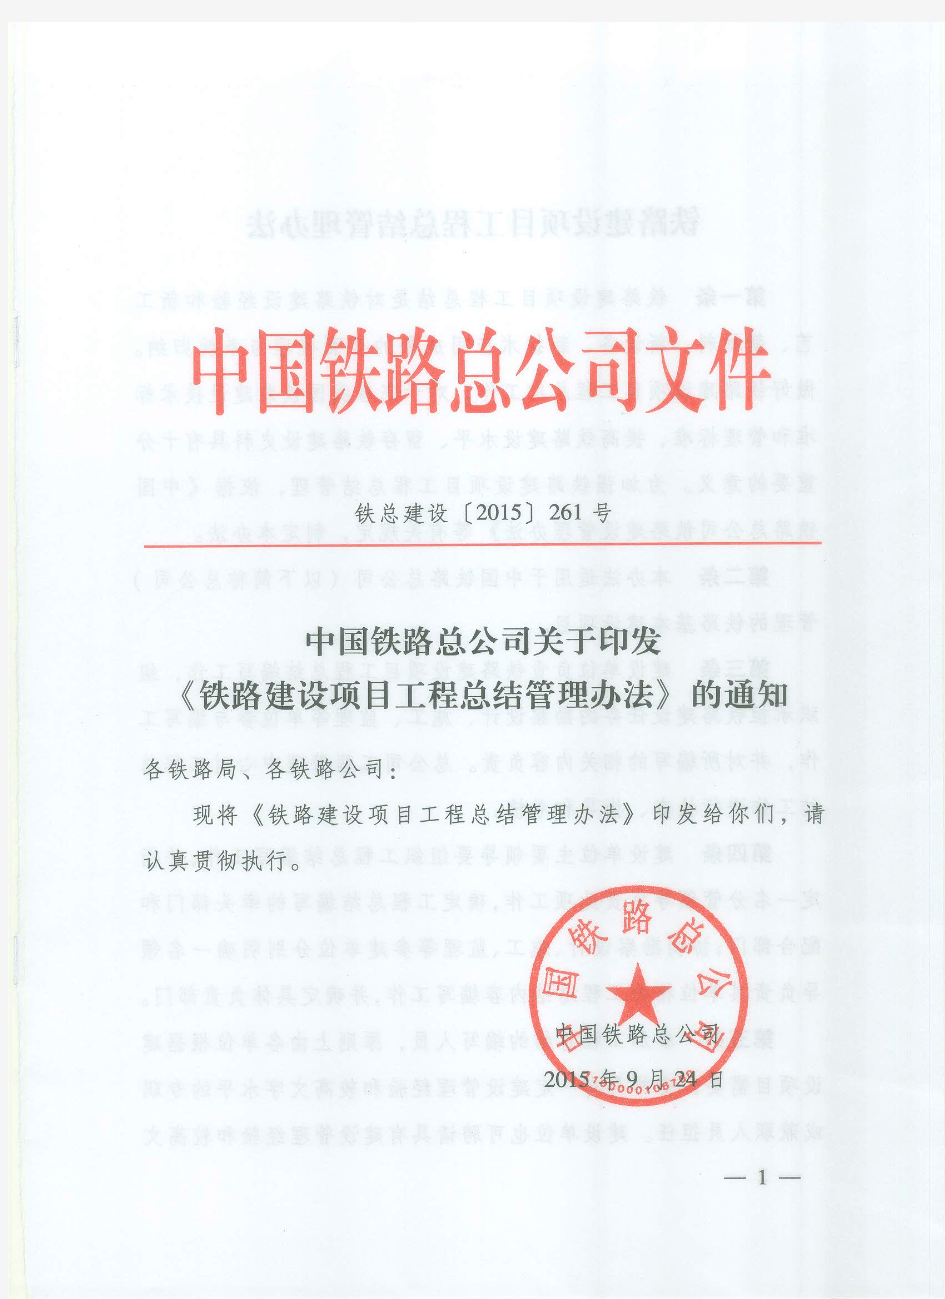 中国铁路总公司 关于印发《铁路建设项目工程总结管理办法》的通知